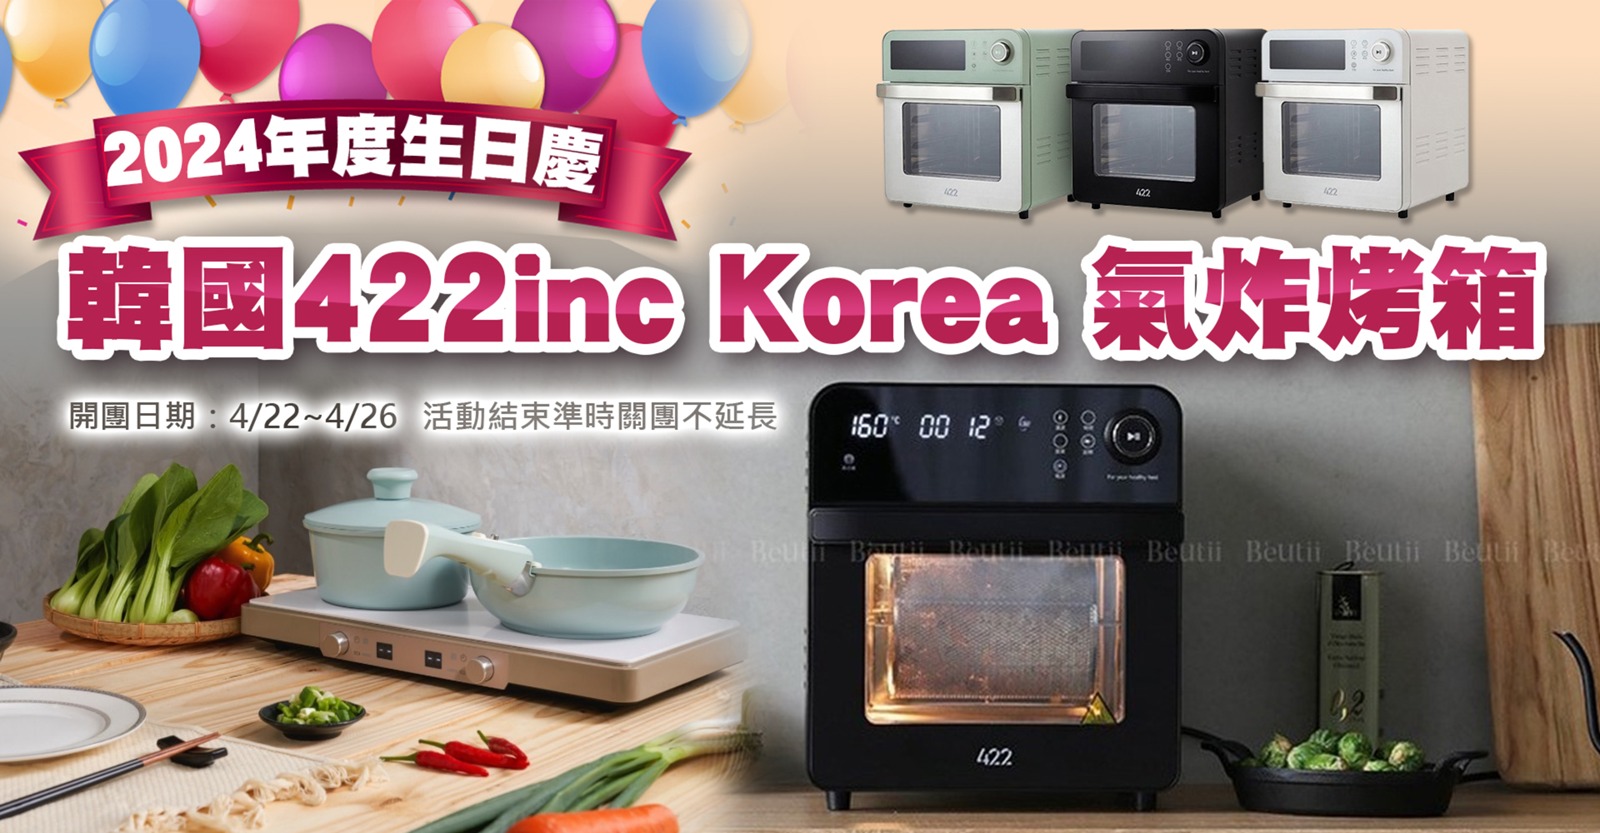 韓國422inc Korea 氣炸烤箱2024年度生日慶  4/22開賣